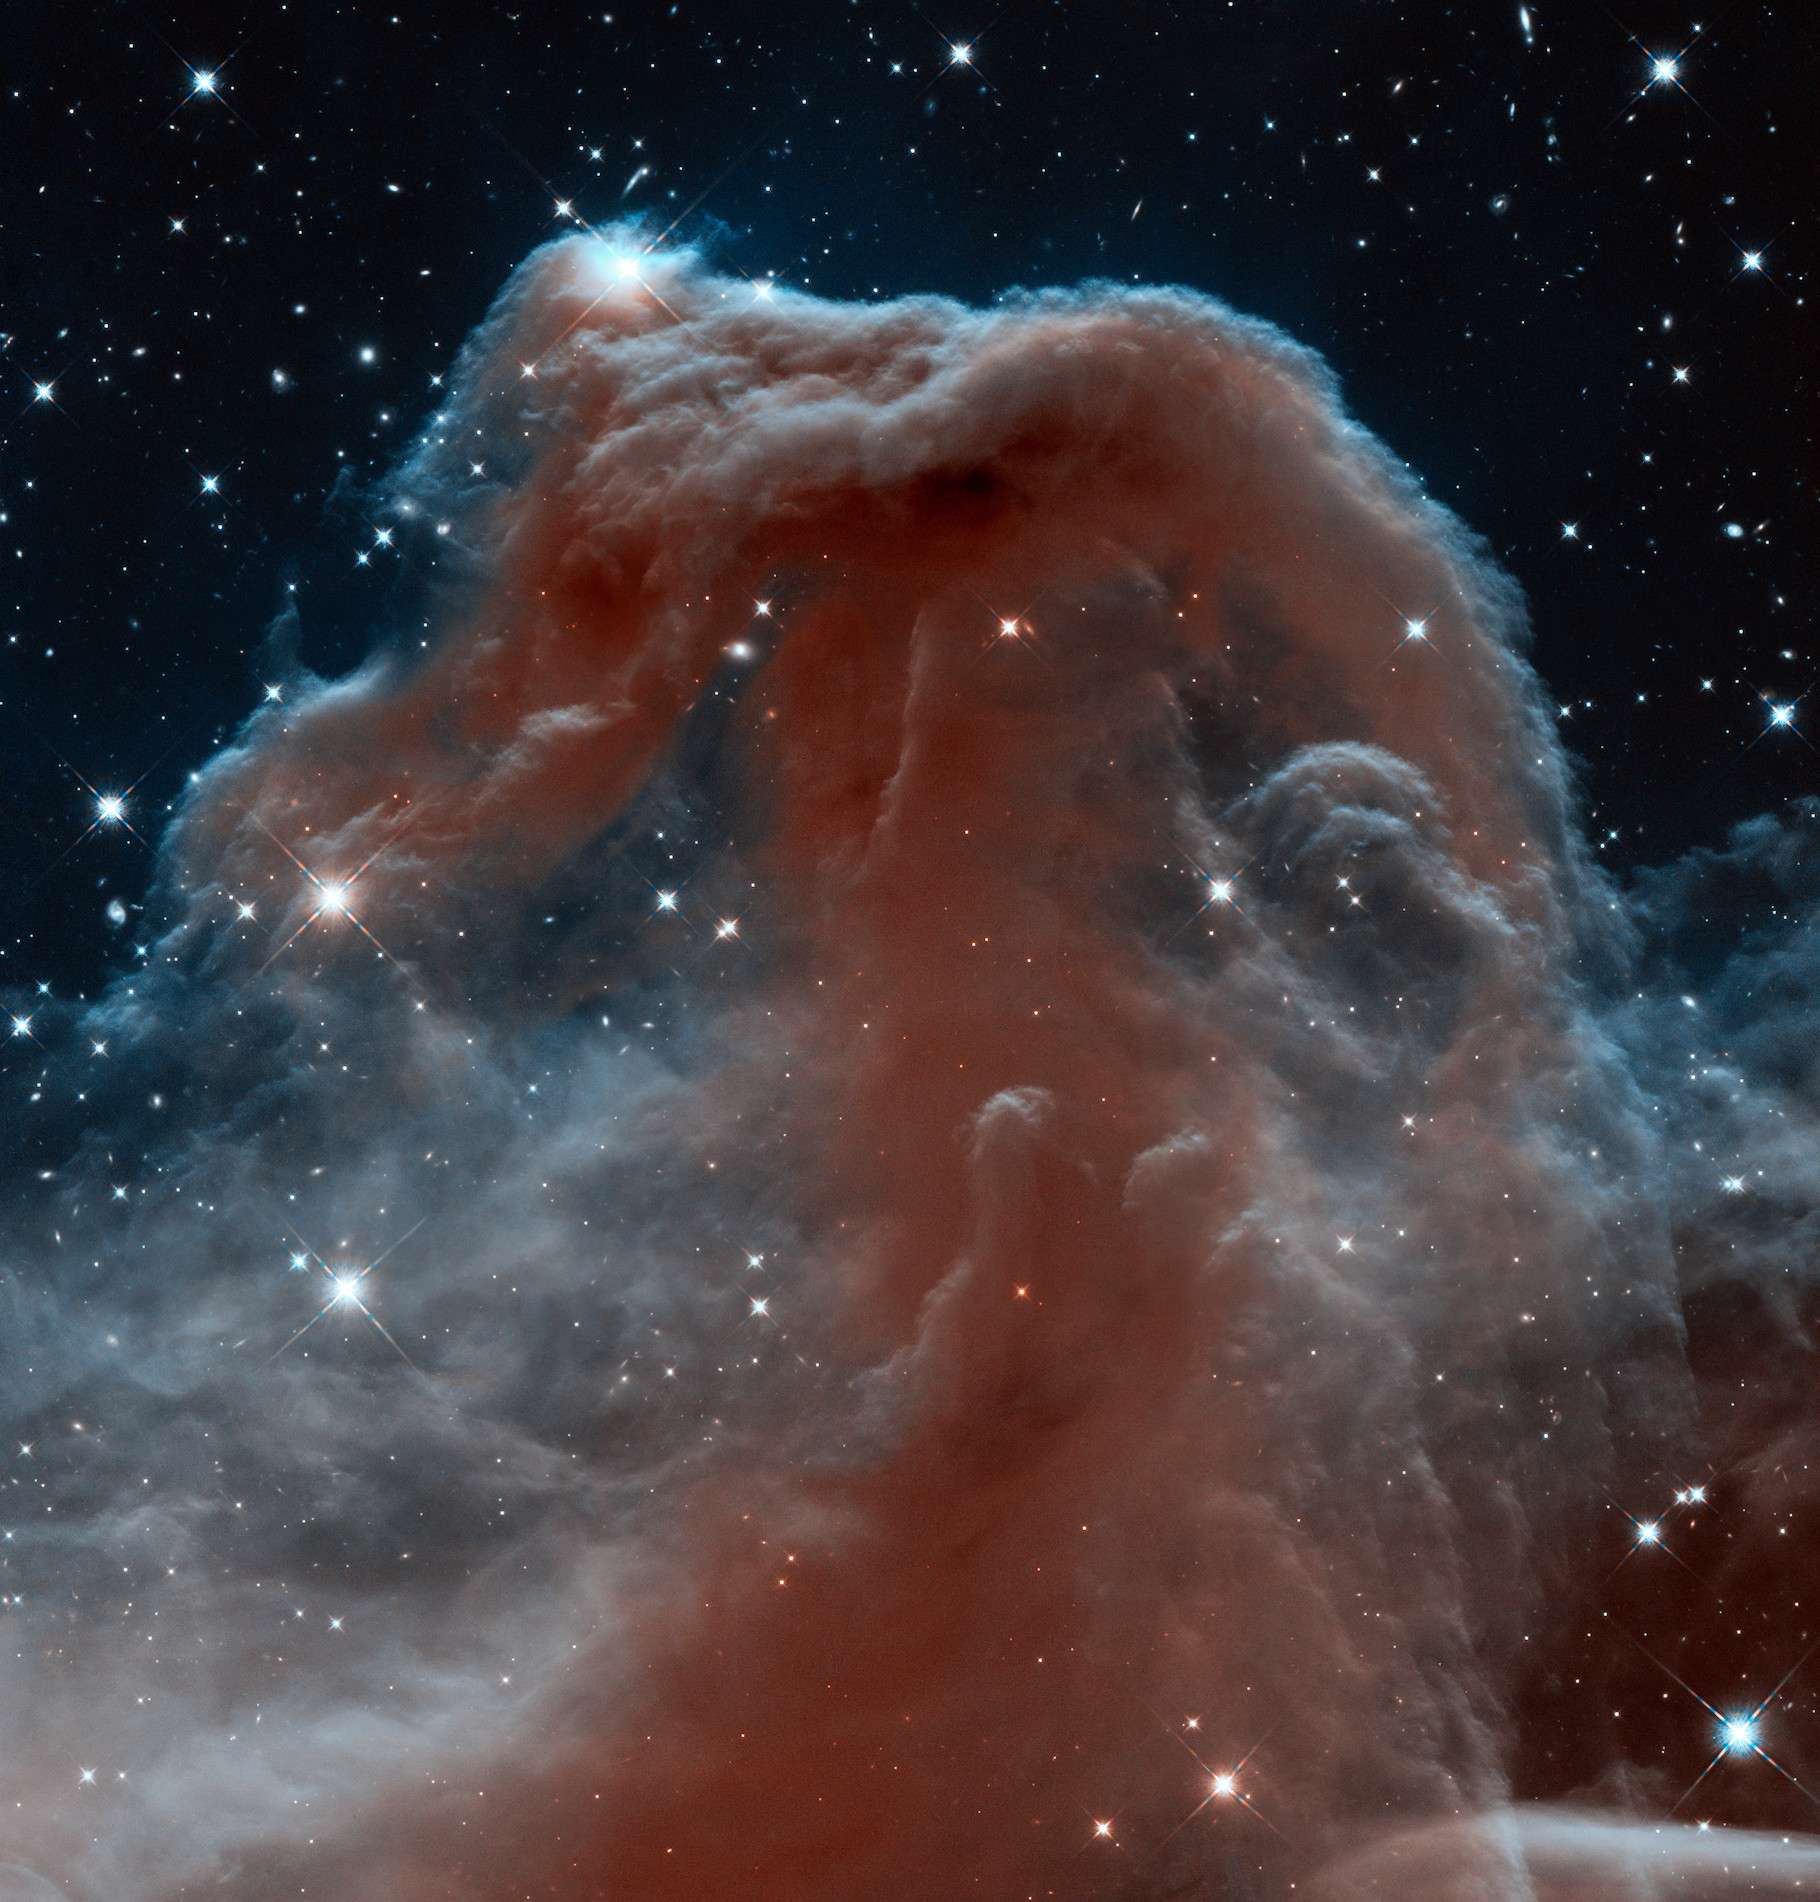 À l’occasion du 23e anniversaire de sa mise en service, le télescope spatial Hubble avait livré une image inédite de la nébuleuse de la Tête de Cheval. © Nasa, ESA, and the Hubble Heritage Team (AURA/STScI)